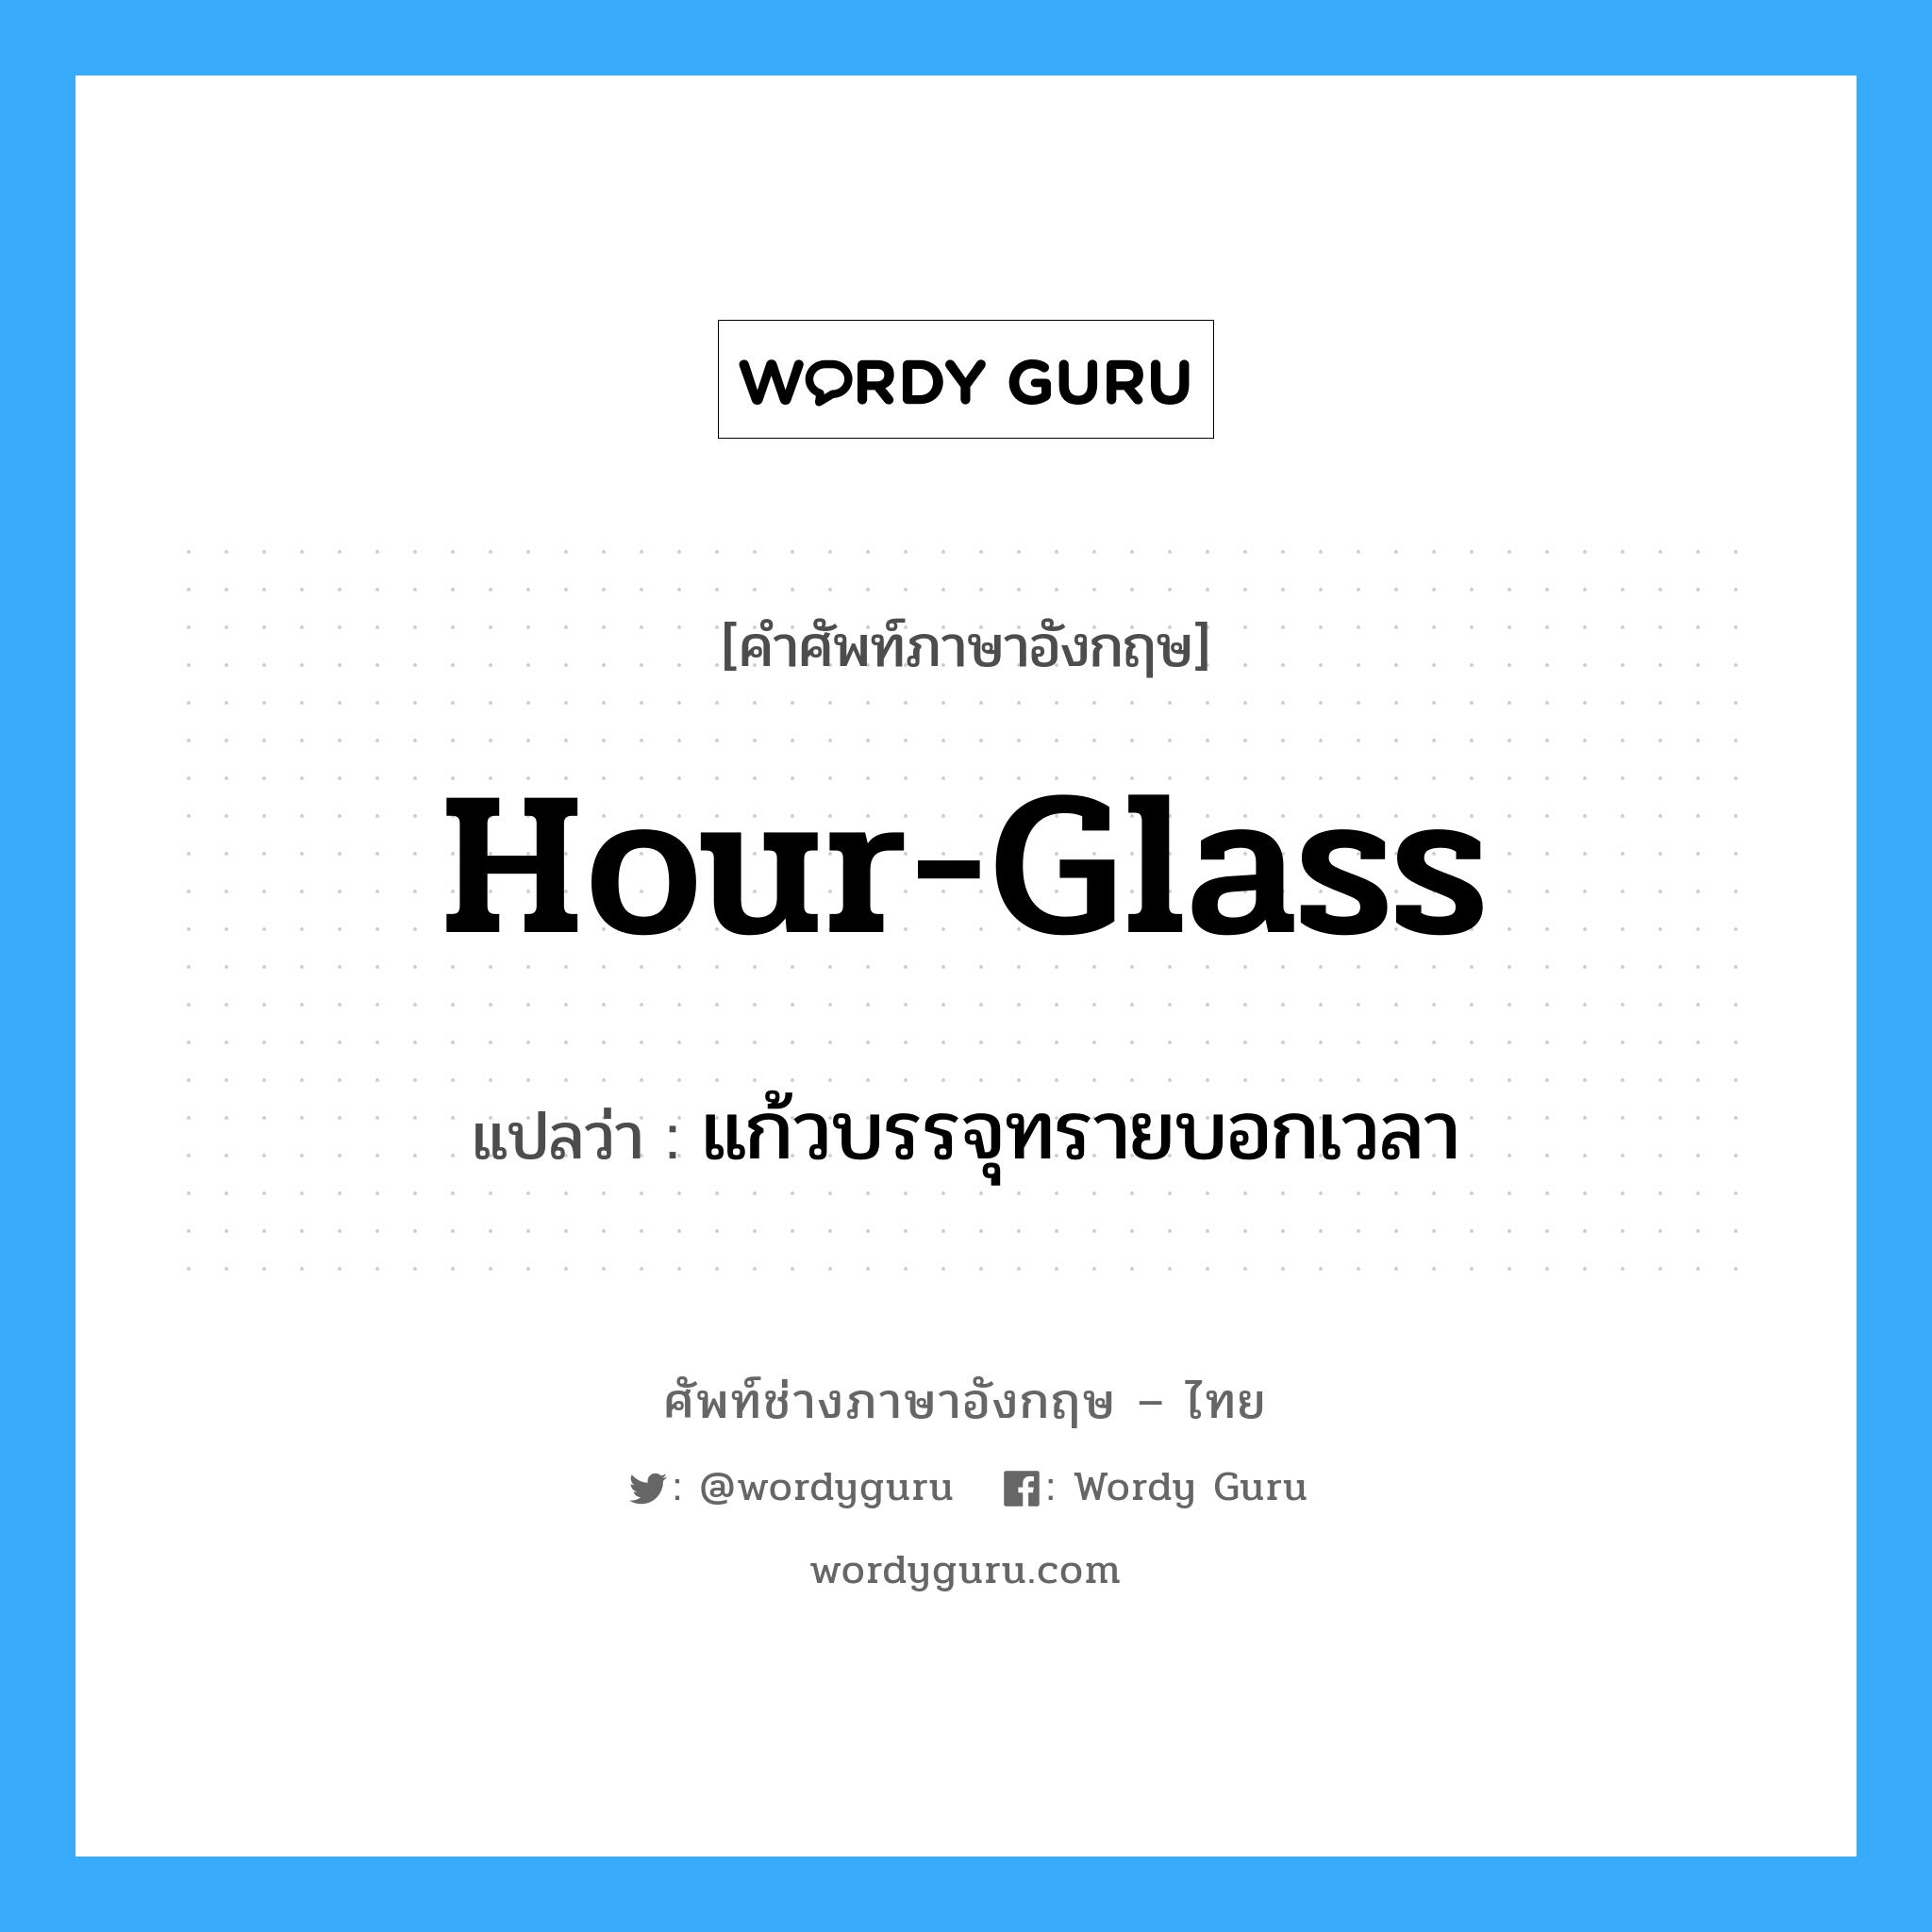 hour glass แปลว่า?, คำศัพท์ช่างภาษาอังกฤษ - ไทย hour-glass คำศัพท์ภาษาอังกฤษ hour-glass แปลว่า แก้วบรรจุทรายบอกเวลา